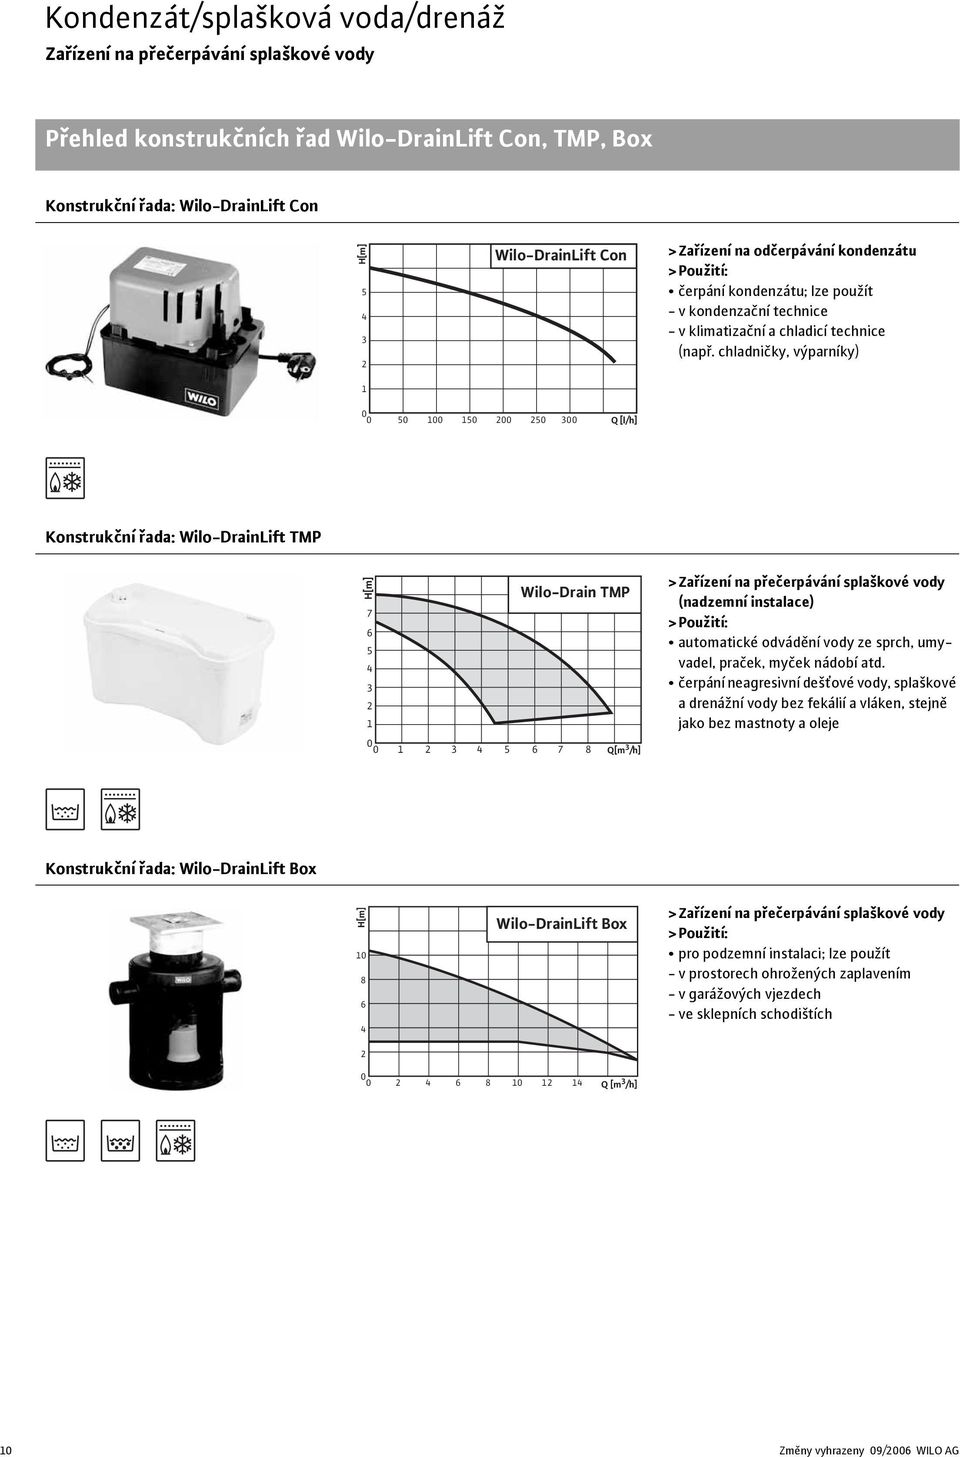 chladničky, výparníky) 0 0 50 100 150 200 250 300 Q [l/h] Konstrukční řada: Wilo-DrainLift TMP H[m] 7 6 5 4 3 2 1 Wilo-Drain TMP >Zařízení na přečerpávání splaškové vody (nadzemní instalace)